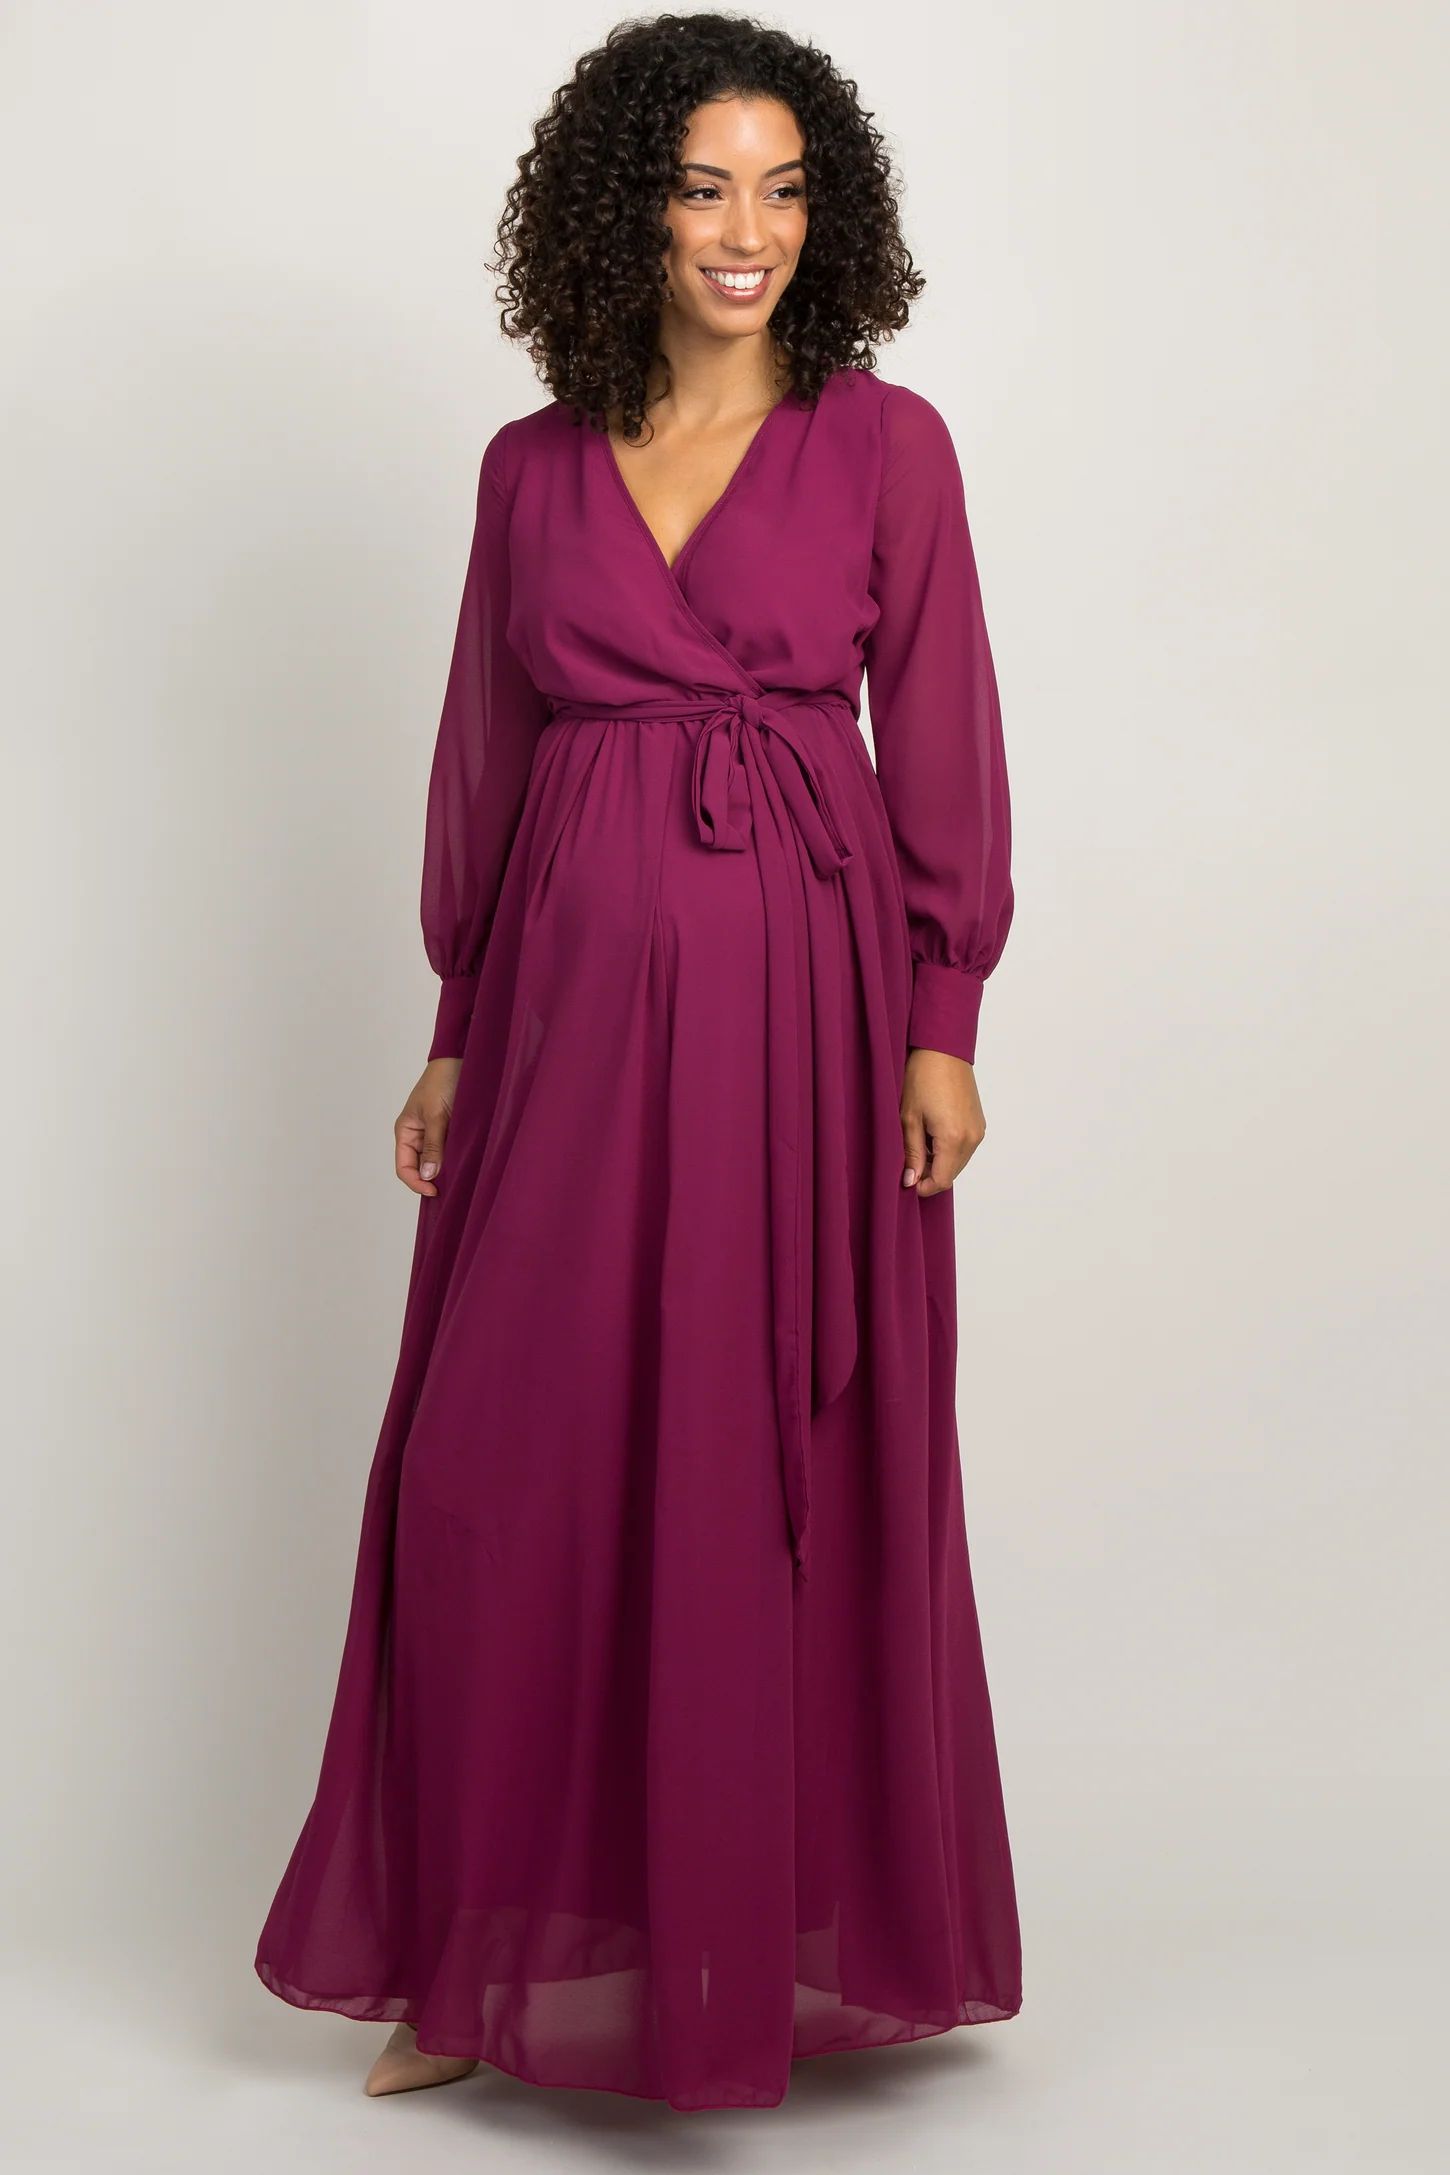 Magenta Chiffon Long Sleeve Pleated Maternity Maxi Dress | PinkBlush Maternity